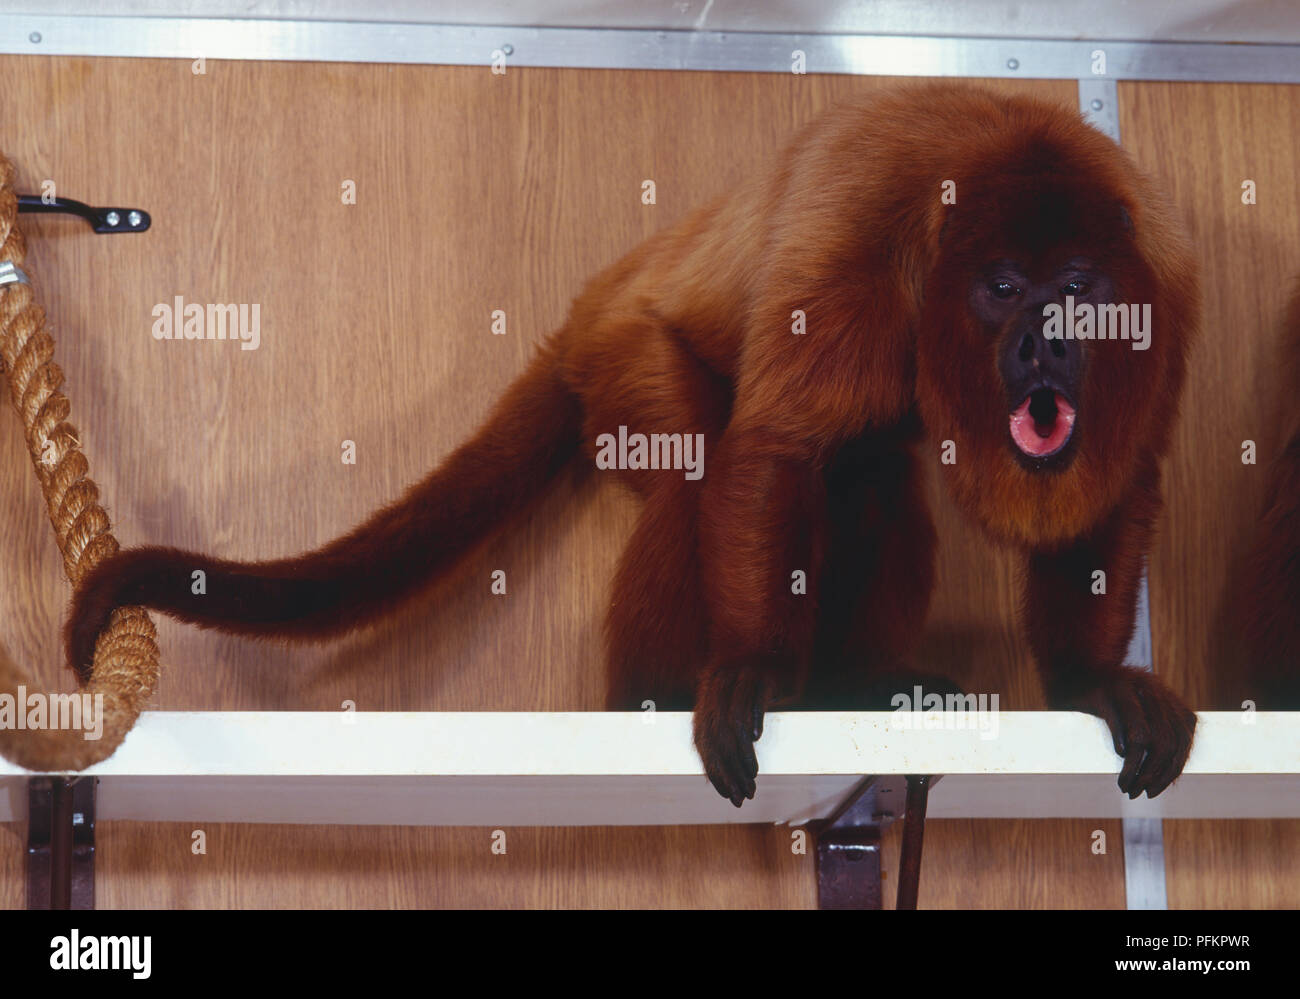 Vista lateral del Mono Blanco con la boca abierta Fotografía de stock -  Alamy